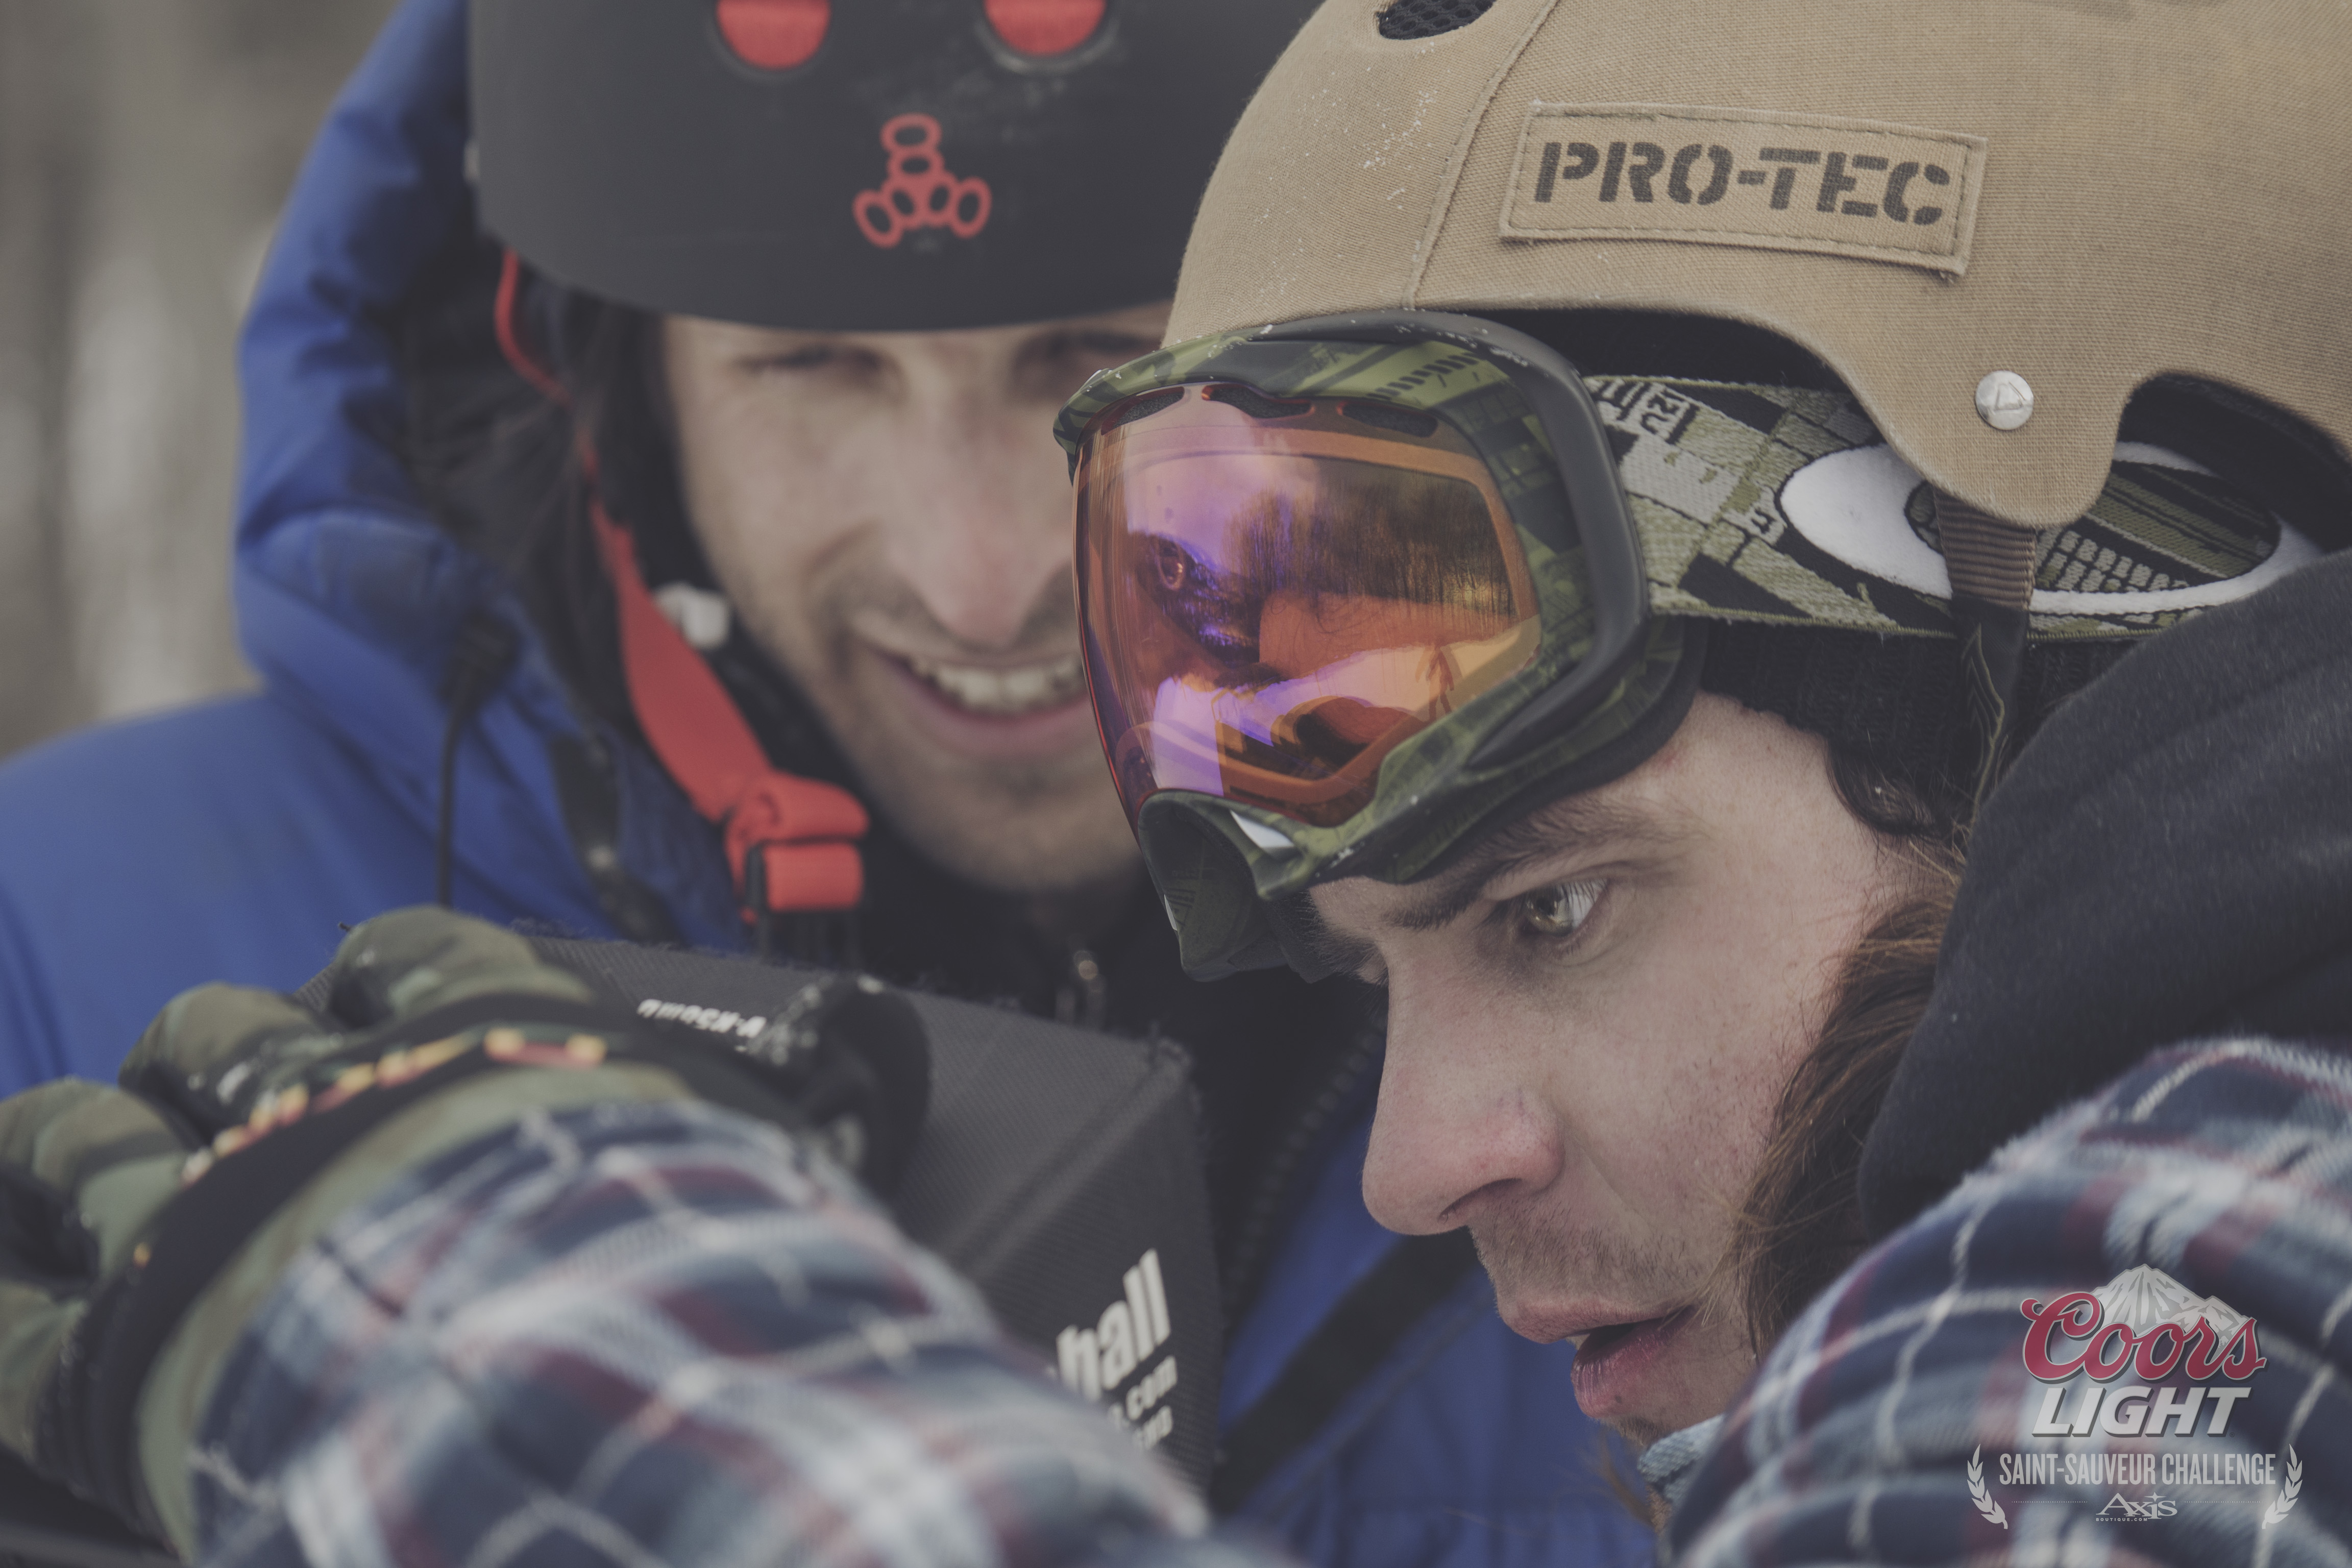 TOP 5: Les meilleurs vidéos de snowboard du Coors Light Challenge selon 33Mag